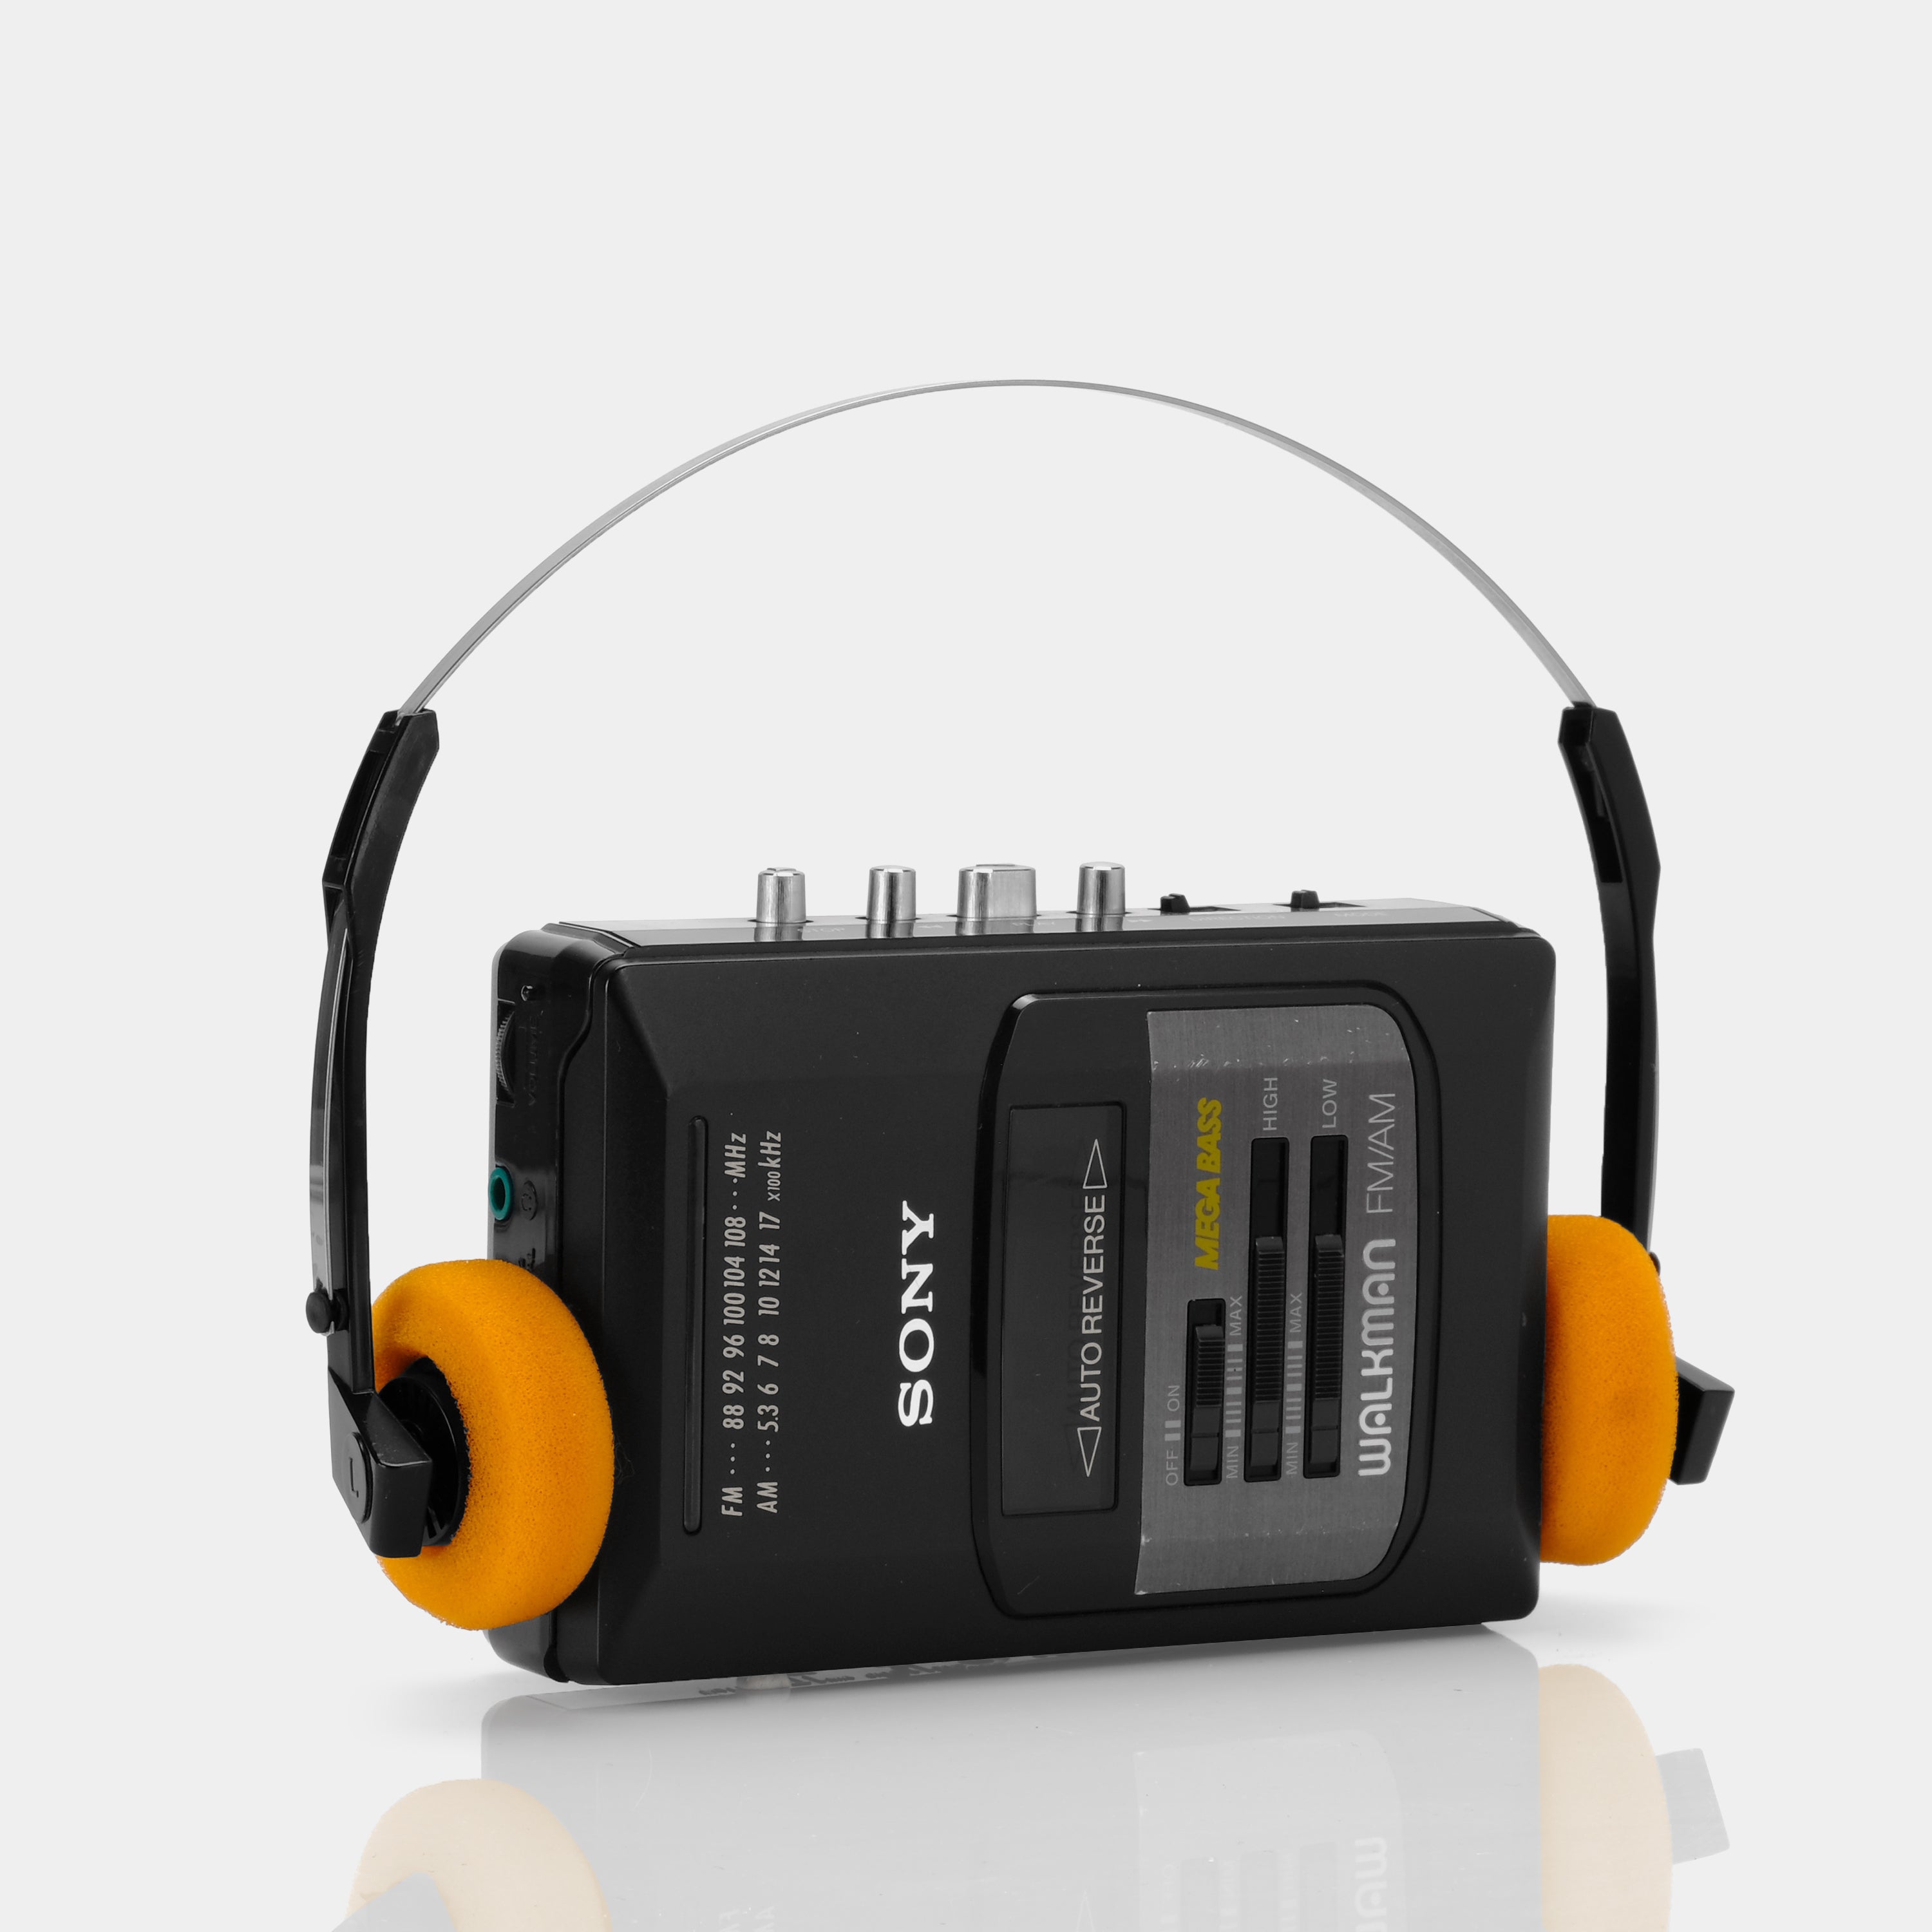 Sony Walkman WM-AF50 MEGA BASS AM/FM Radio Cassette Player (B-Grade)